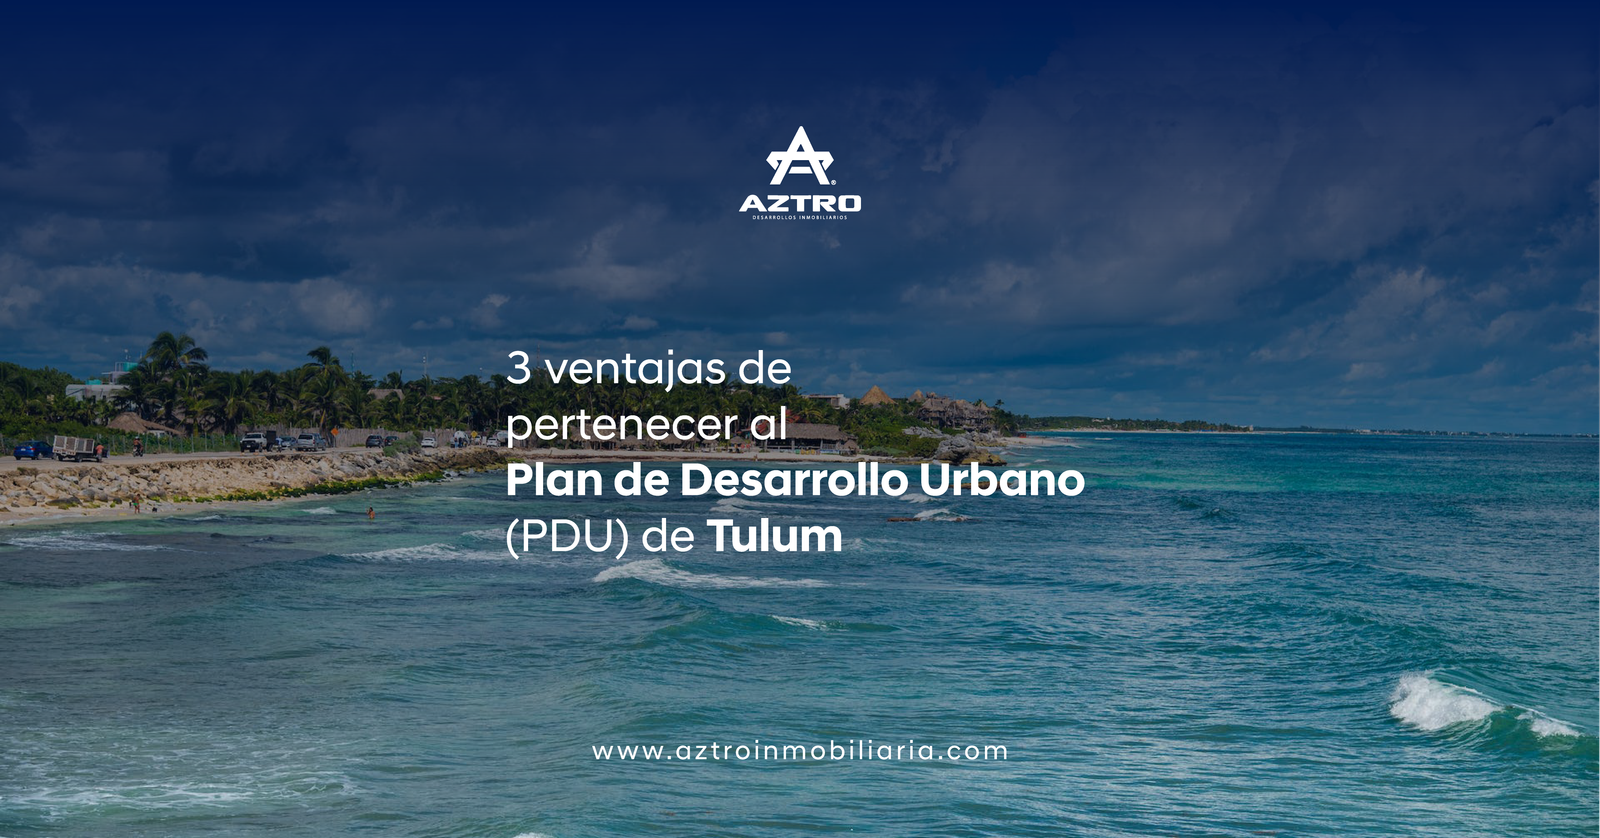 3 ventajas de pertenecer al Plan de Desarrollo Urbano (PDU) de Tulum